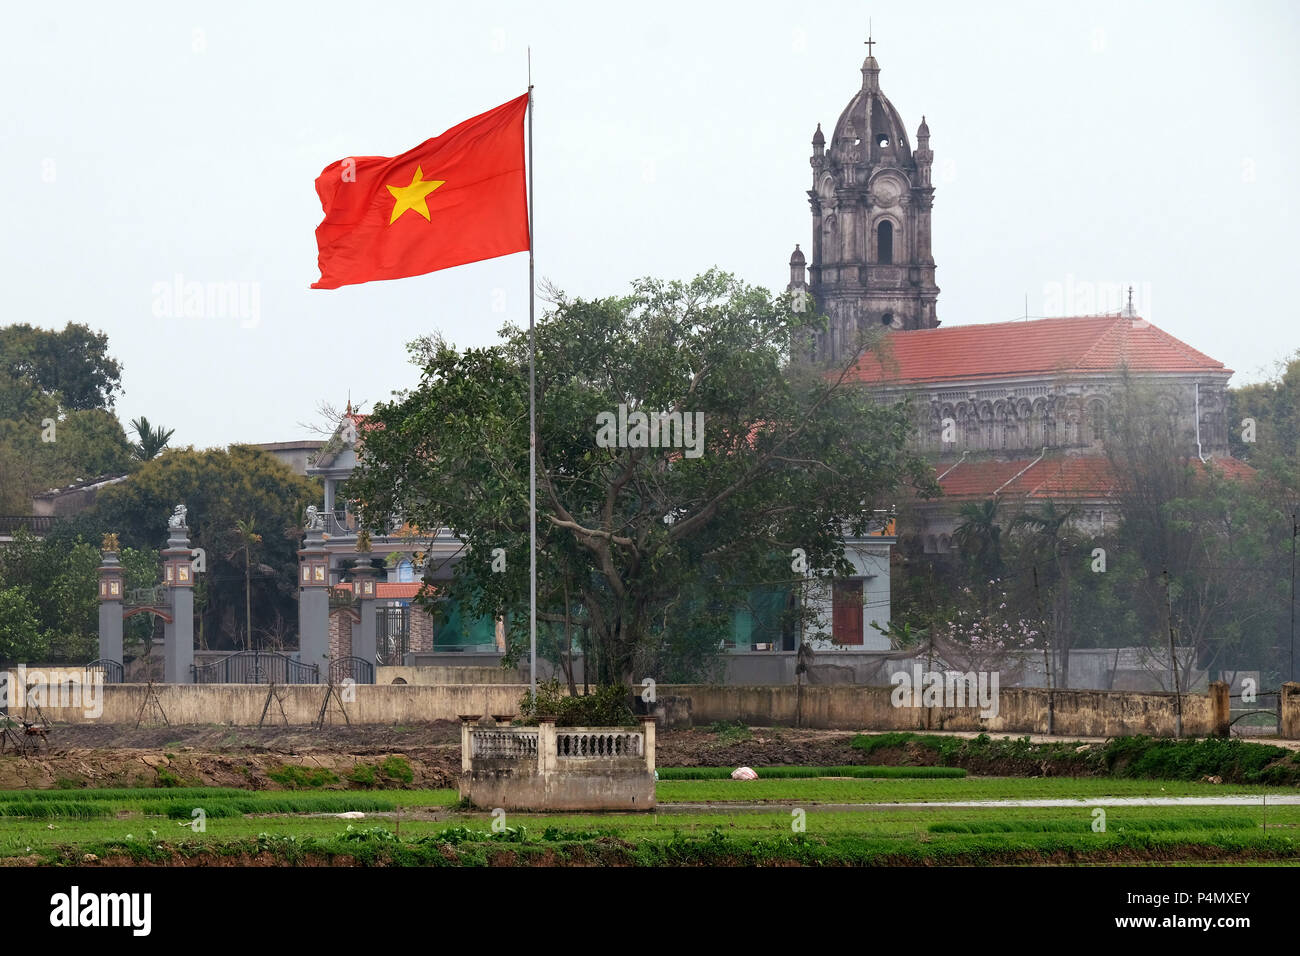 Vietnam country flag and catholic church in a rice field in Nam Dinh province, Vietnam - Landesfahne Vietnams und katholische Kirche in einem Reisfeld in der Nam Dinh-Provinz, Vietnam Stock Photo